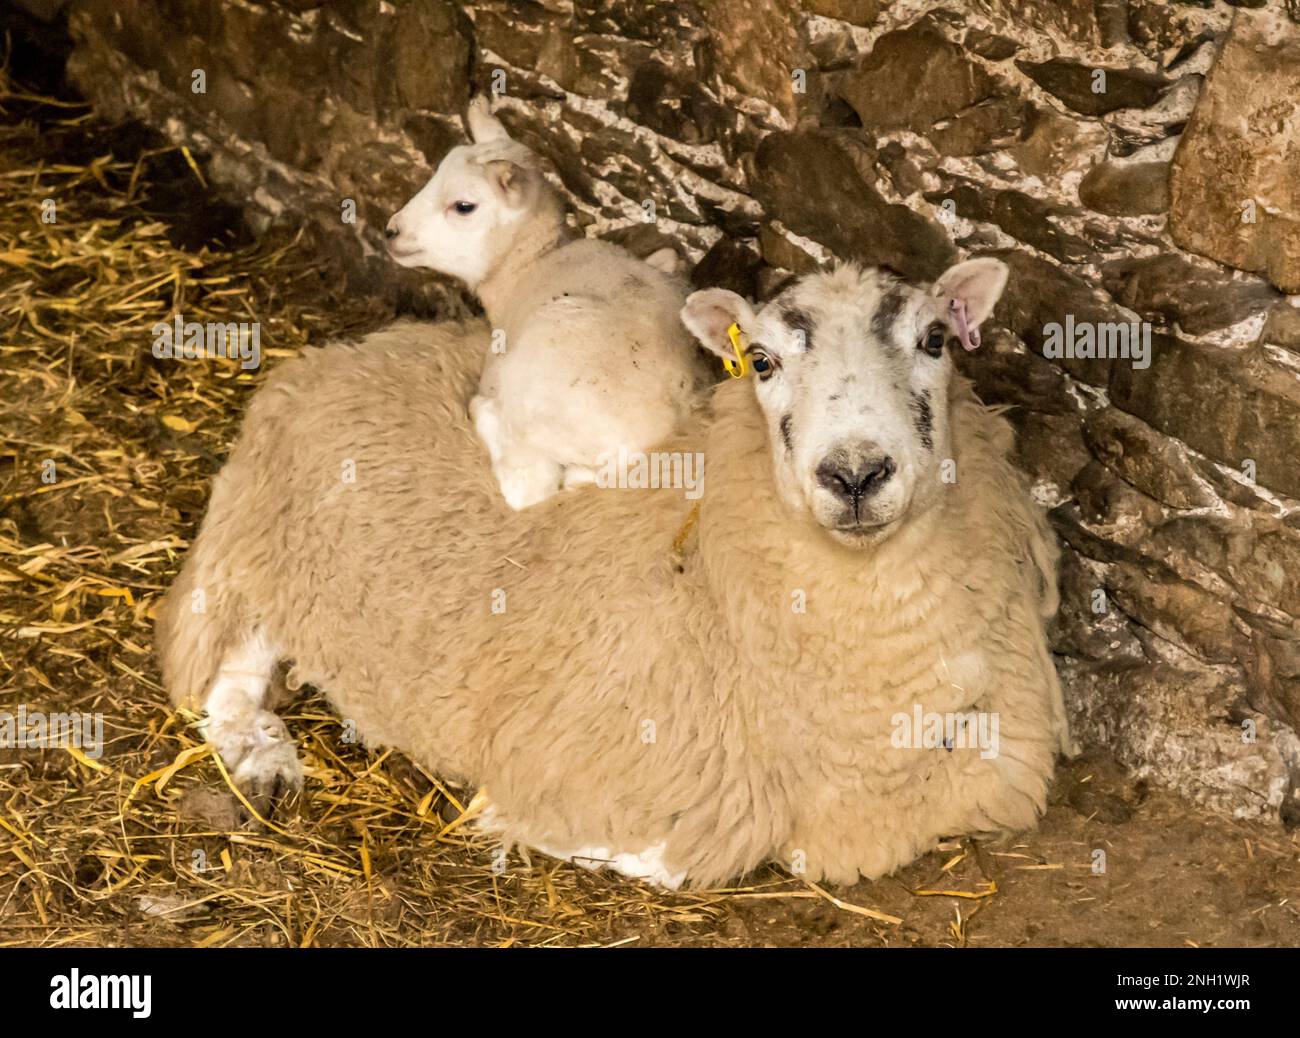 Ein junges Lamm, das auf einem Mutterschaf auf einem Strohboden sitzt Stockfoto